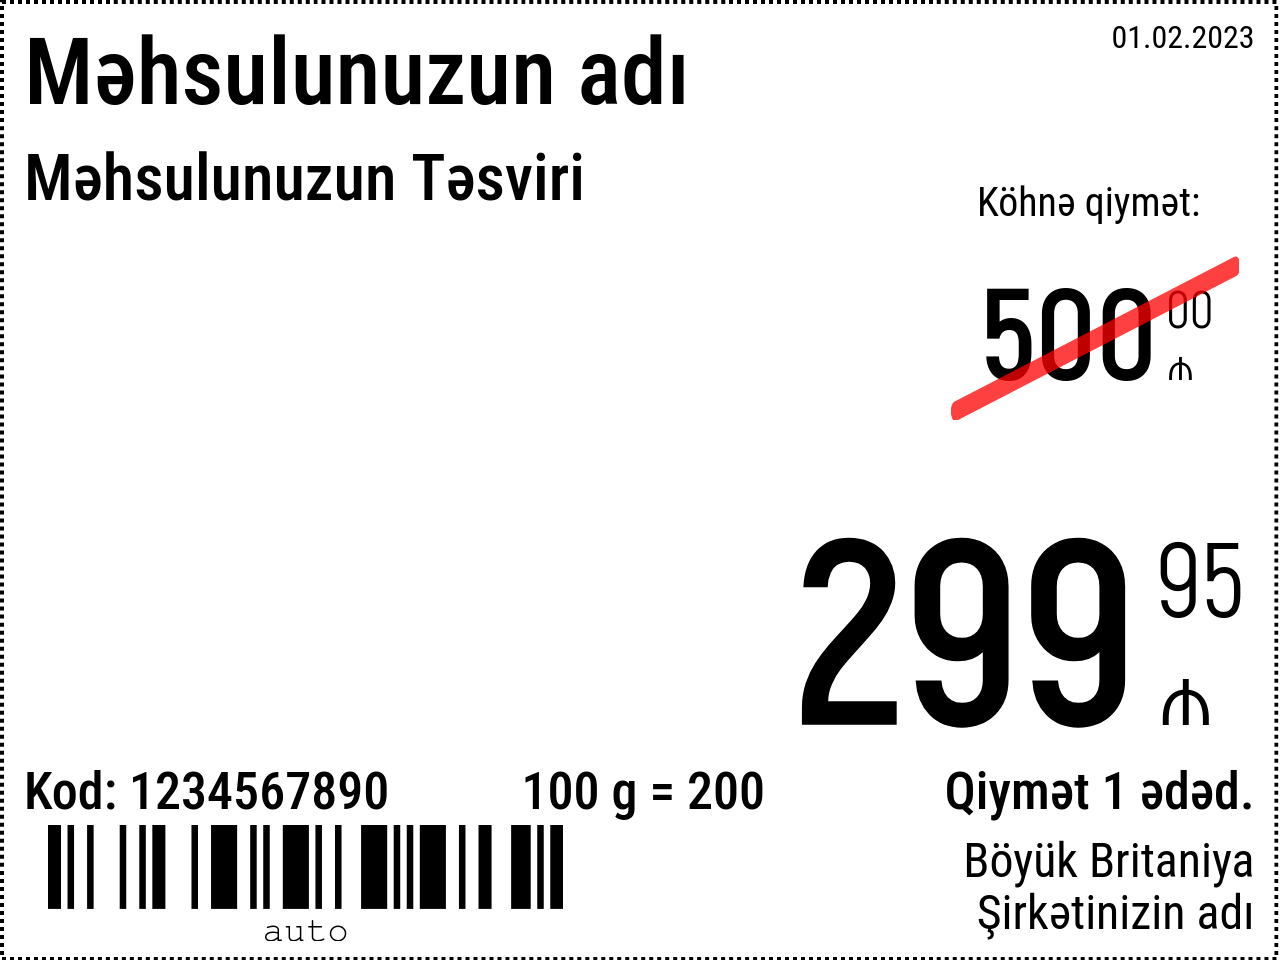 Qiymət etiketi Yeni / 8x6 / Reklam